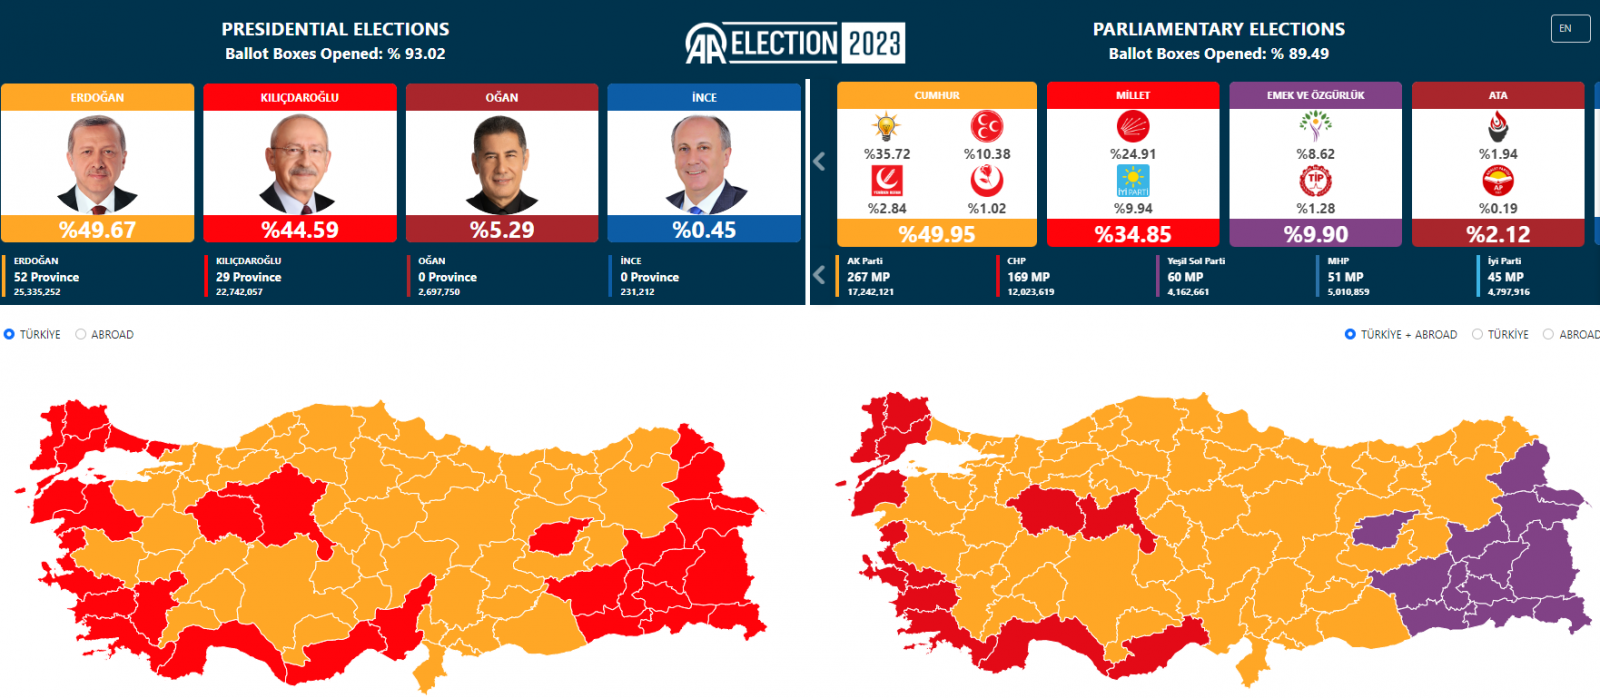 Török hírügynökség- A döntő többséget ugyan egyik jelöltnek sem sikerült elérnie, a regnáló elnök azonban jó esélyekkel vág neki a május 28-án tartandó második fordulónak. 